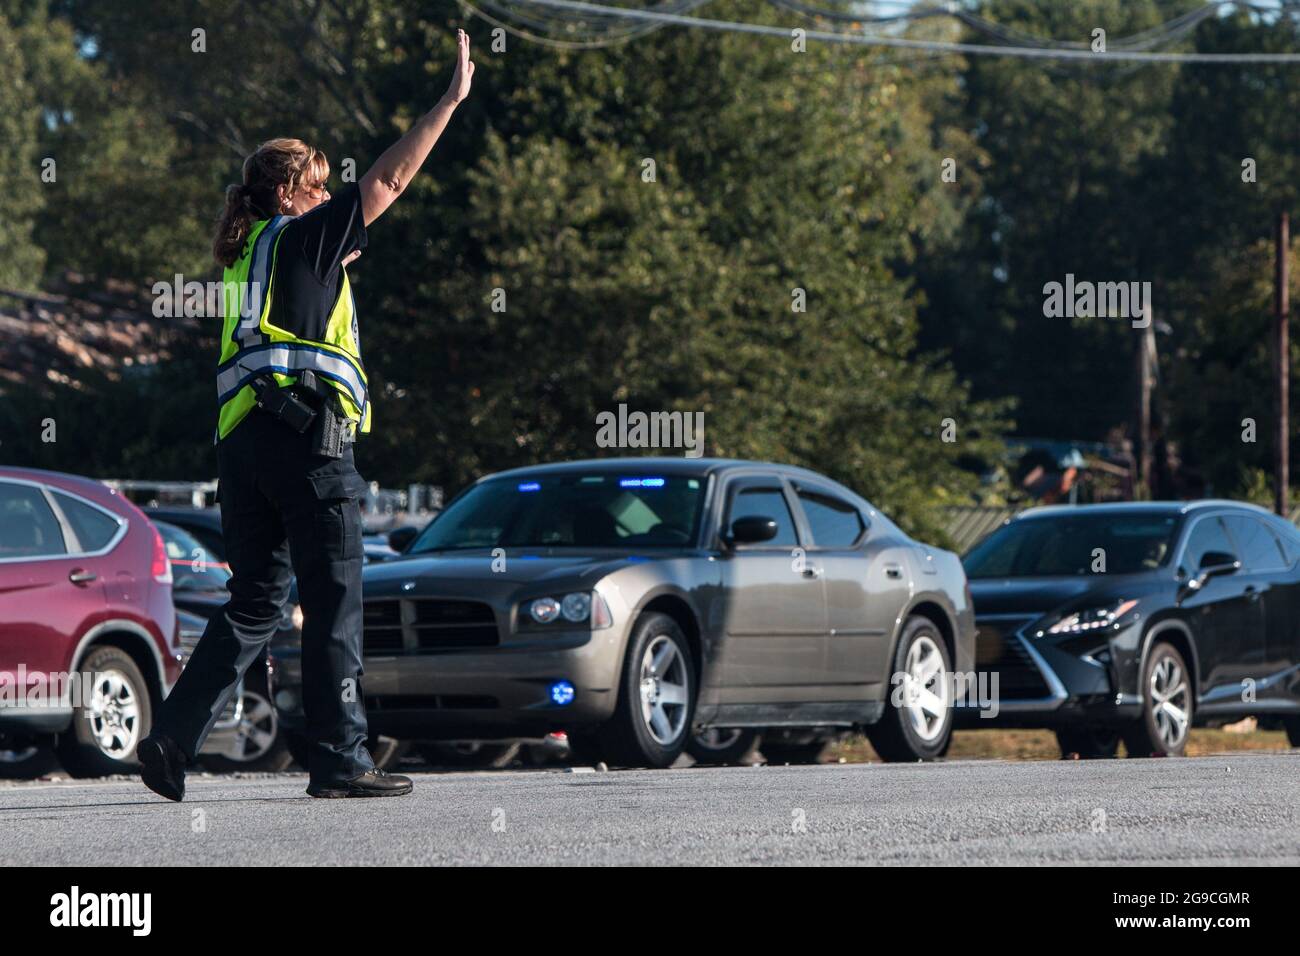 Suwanee, GA, USA - 21. September 2019: Eine Polizistin legt ihre Hand hoch, um den Verkehr zu stoppen, während sie den Fahrzeugverkehr auf einem Herbstfest leitet. Stockfoto